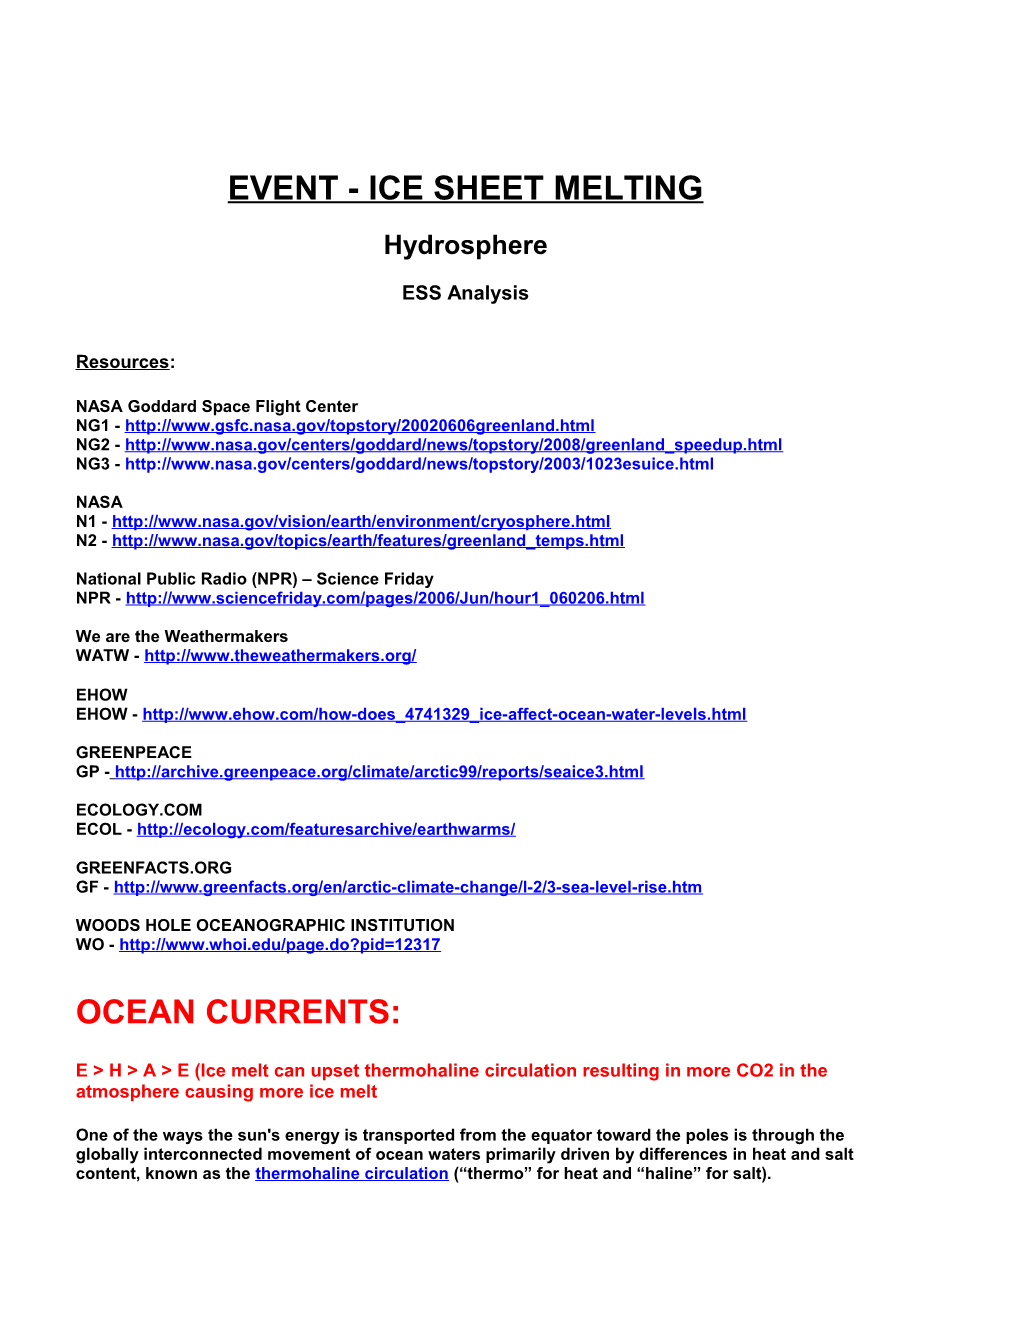 Event - Ice Sheet Melting